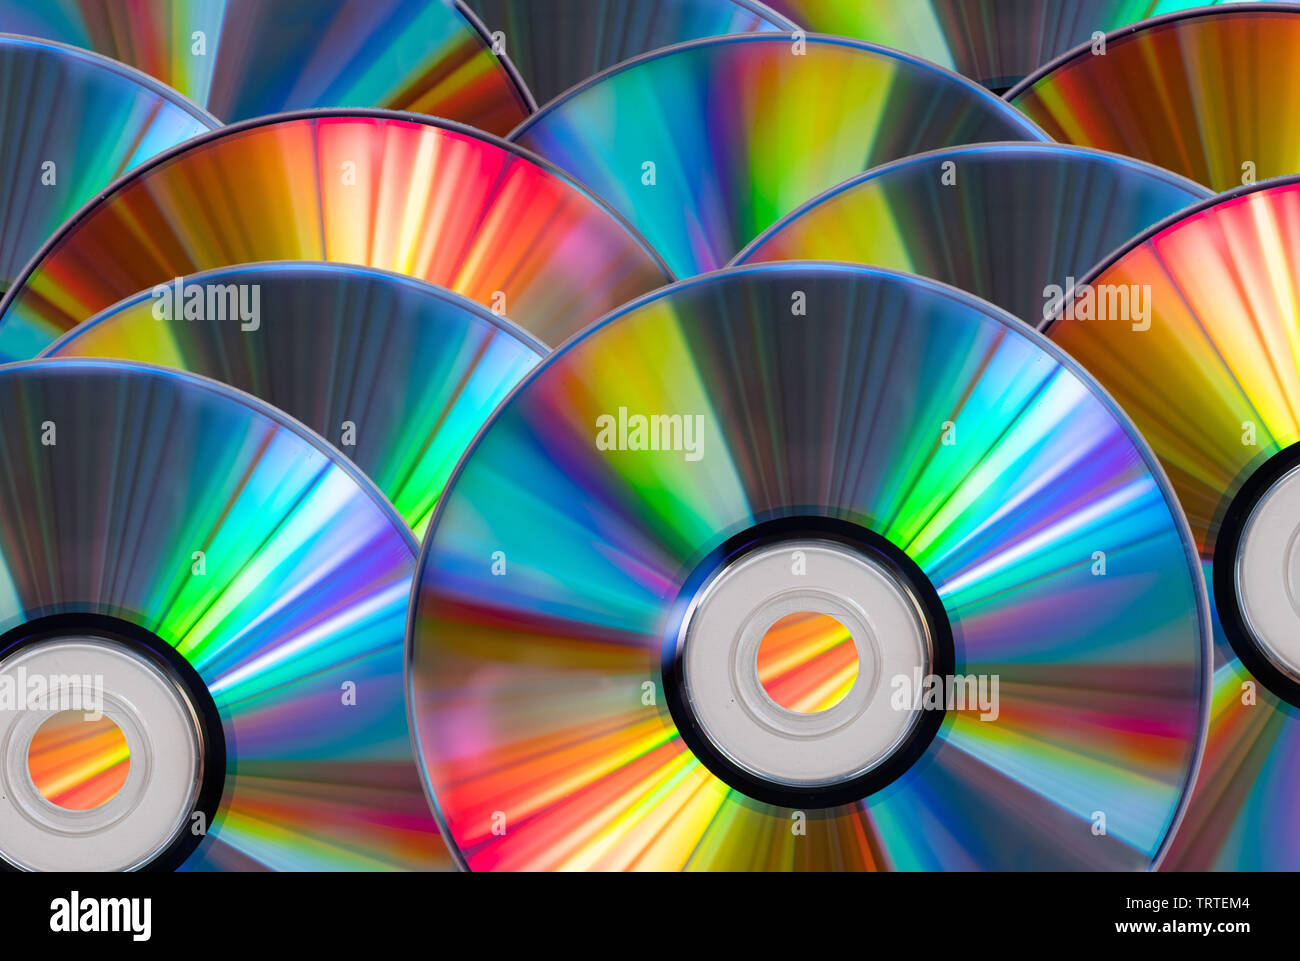 Vintage Fond de disque CD ou DVD, disques cercle ancien utilisé pour le stockage des données, de partager des films et de la musique Banque D'Images